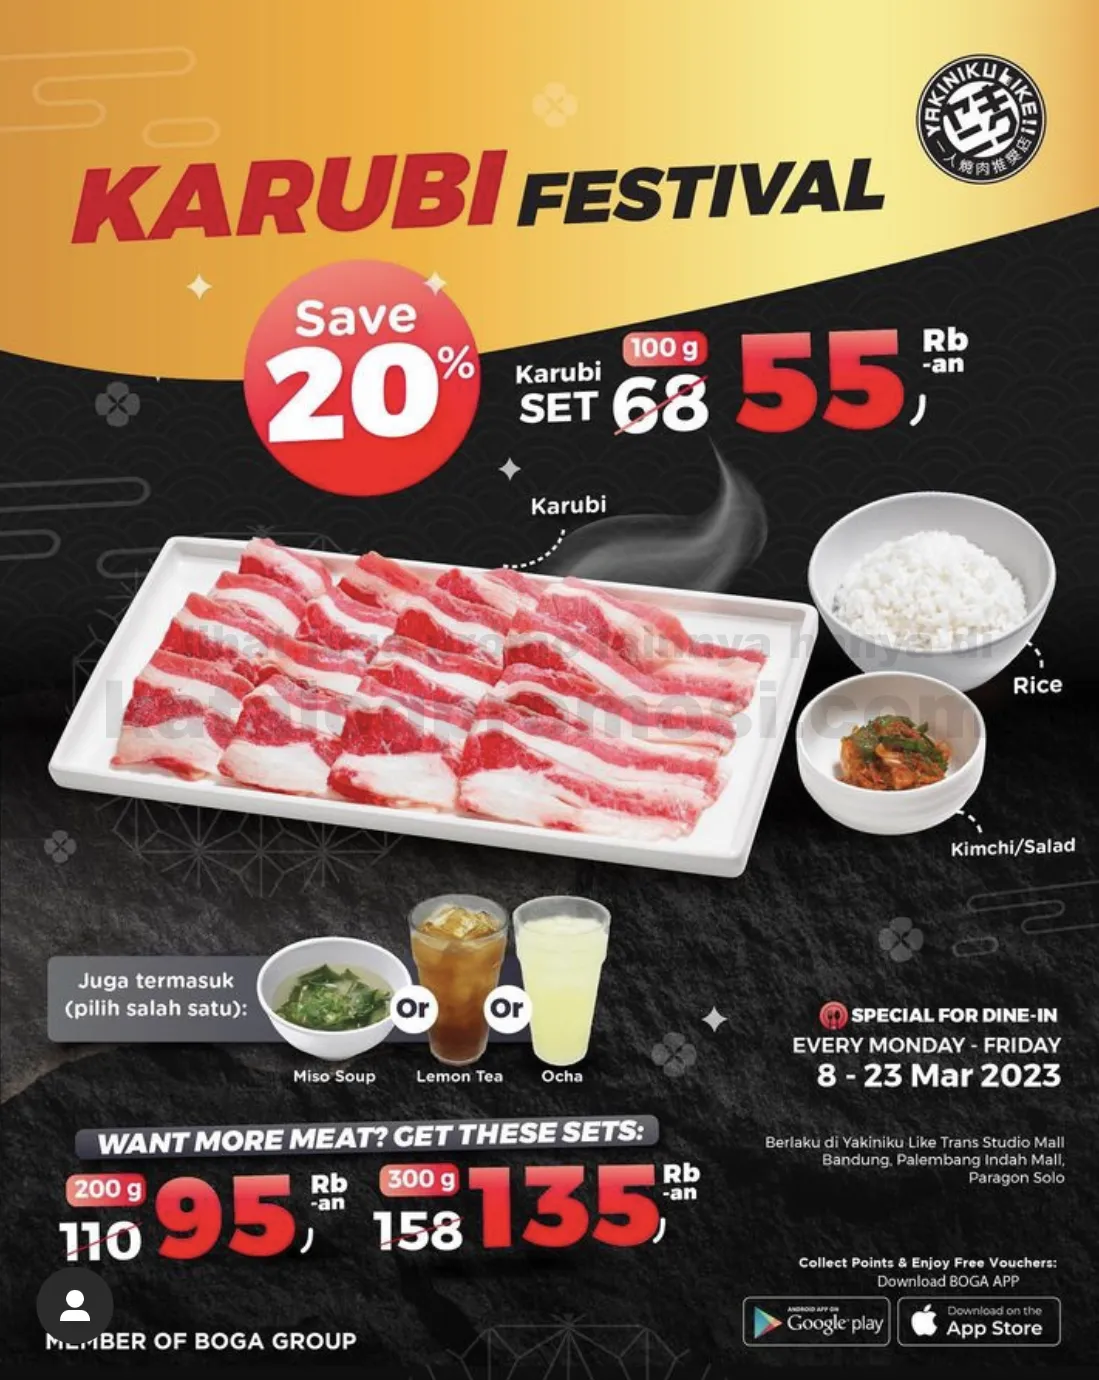 Promo YAKINIKU LIKE KARUBI FESTIVAL - DISKON 20% untuk Karubi Set ! Harga mulai dari 55RIBU-an!